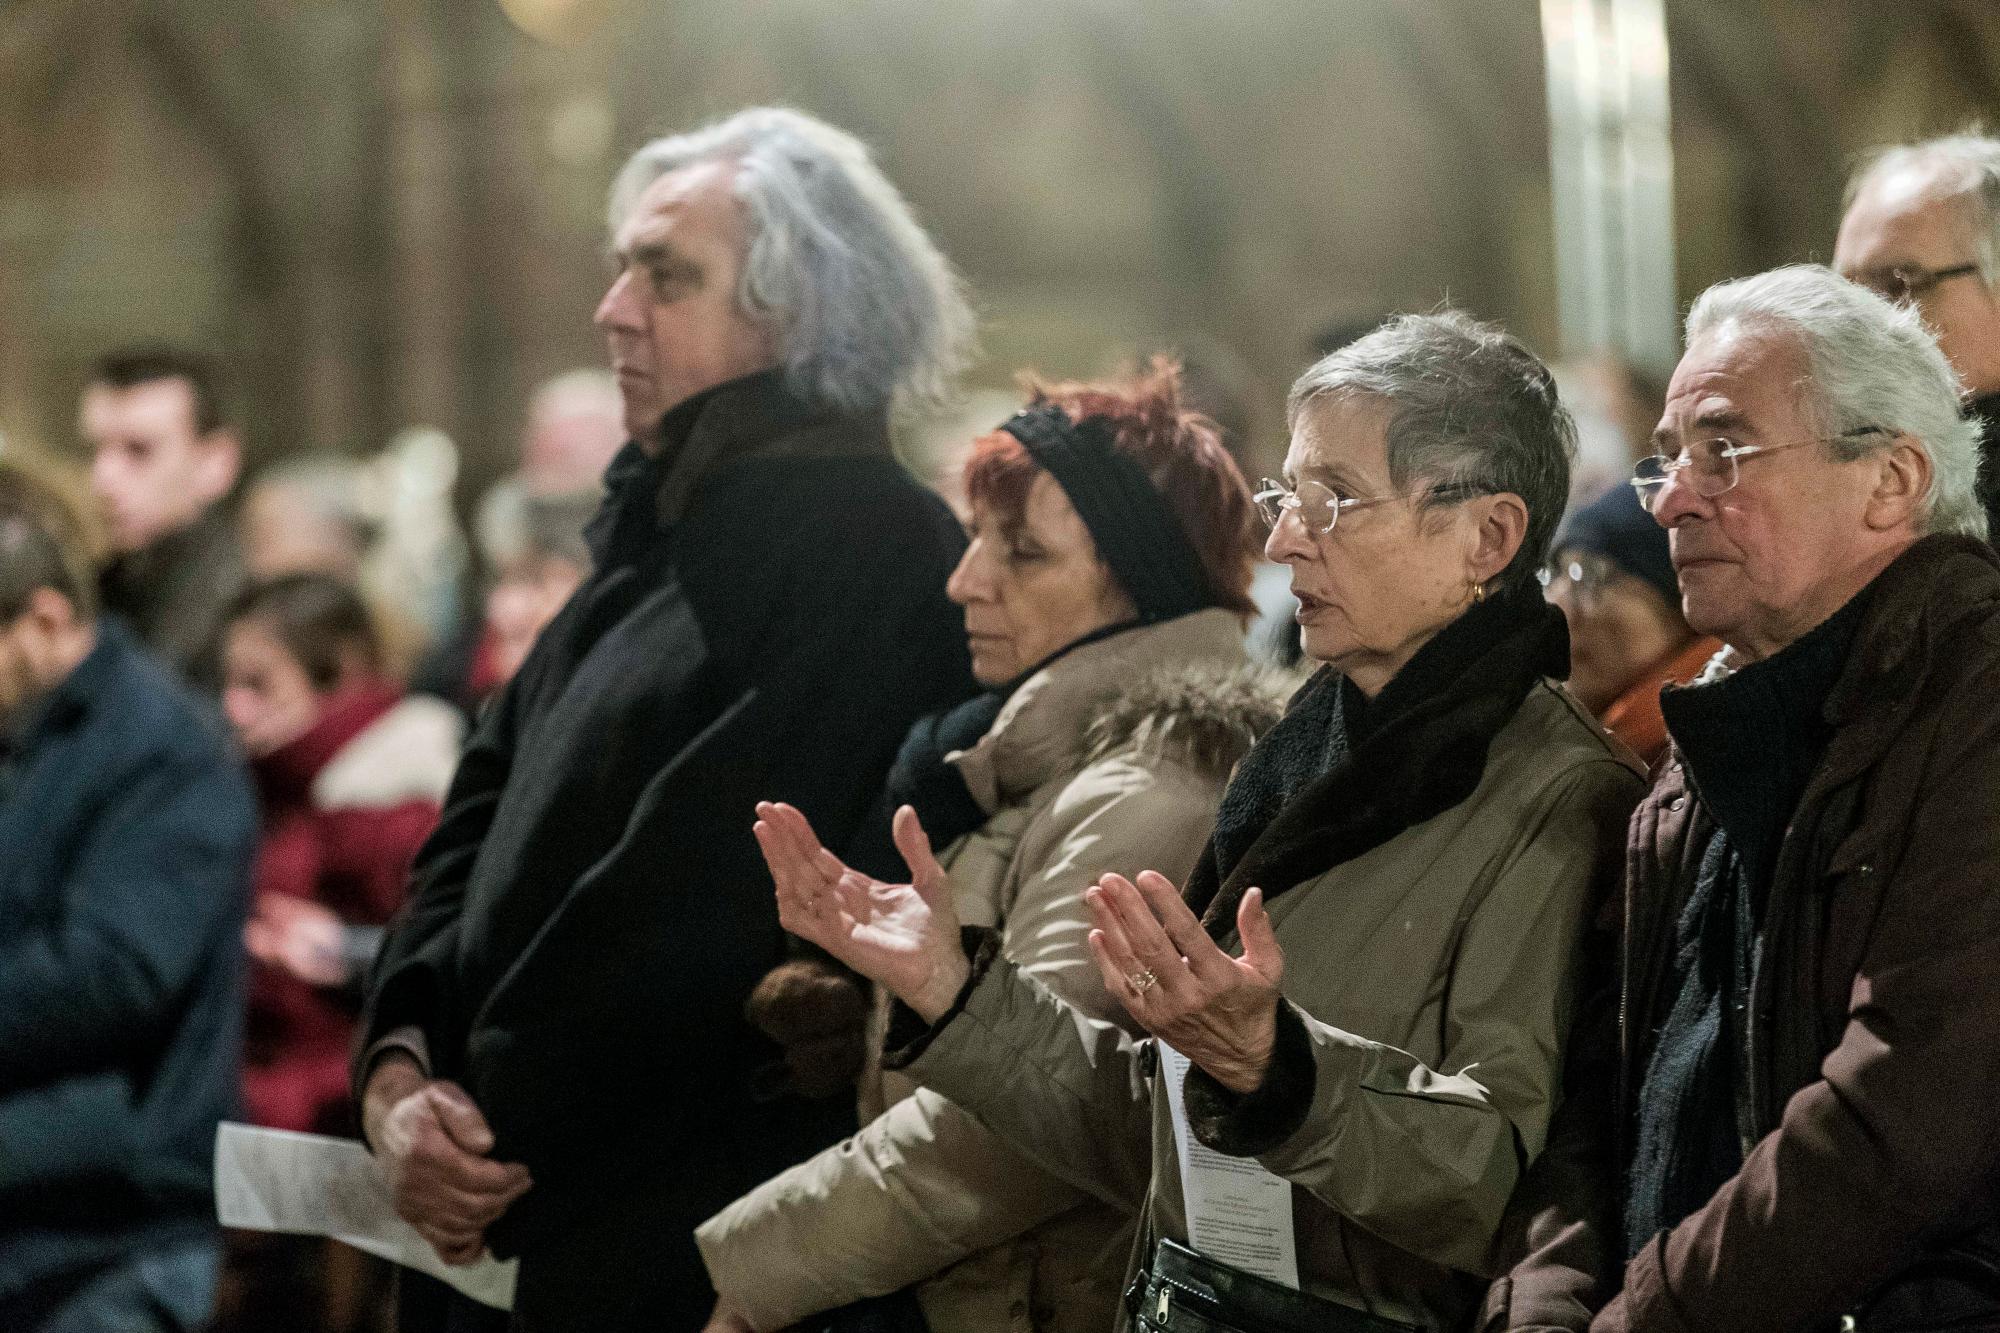 La gente asiste a un servicio religioso en memoria de las víctimas del ataque, en la catedral de Estrasburgo, en el este de Francia.